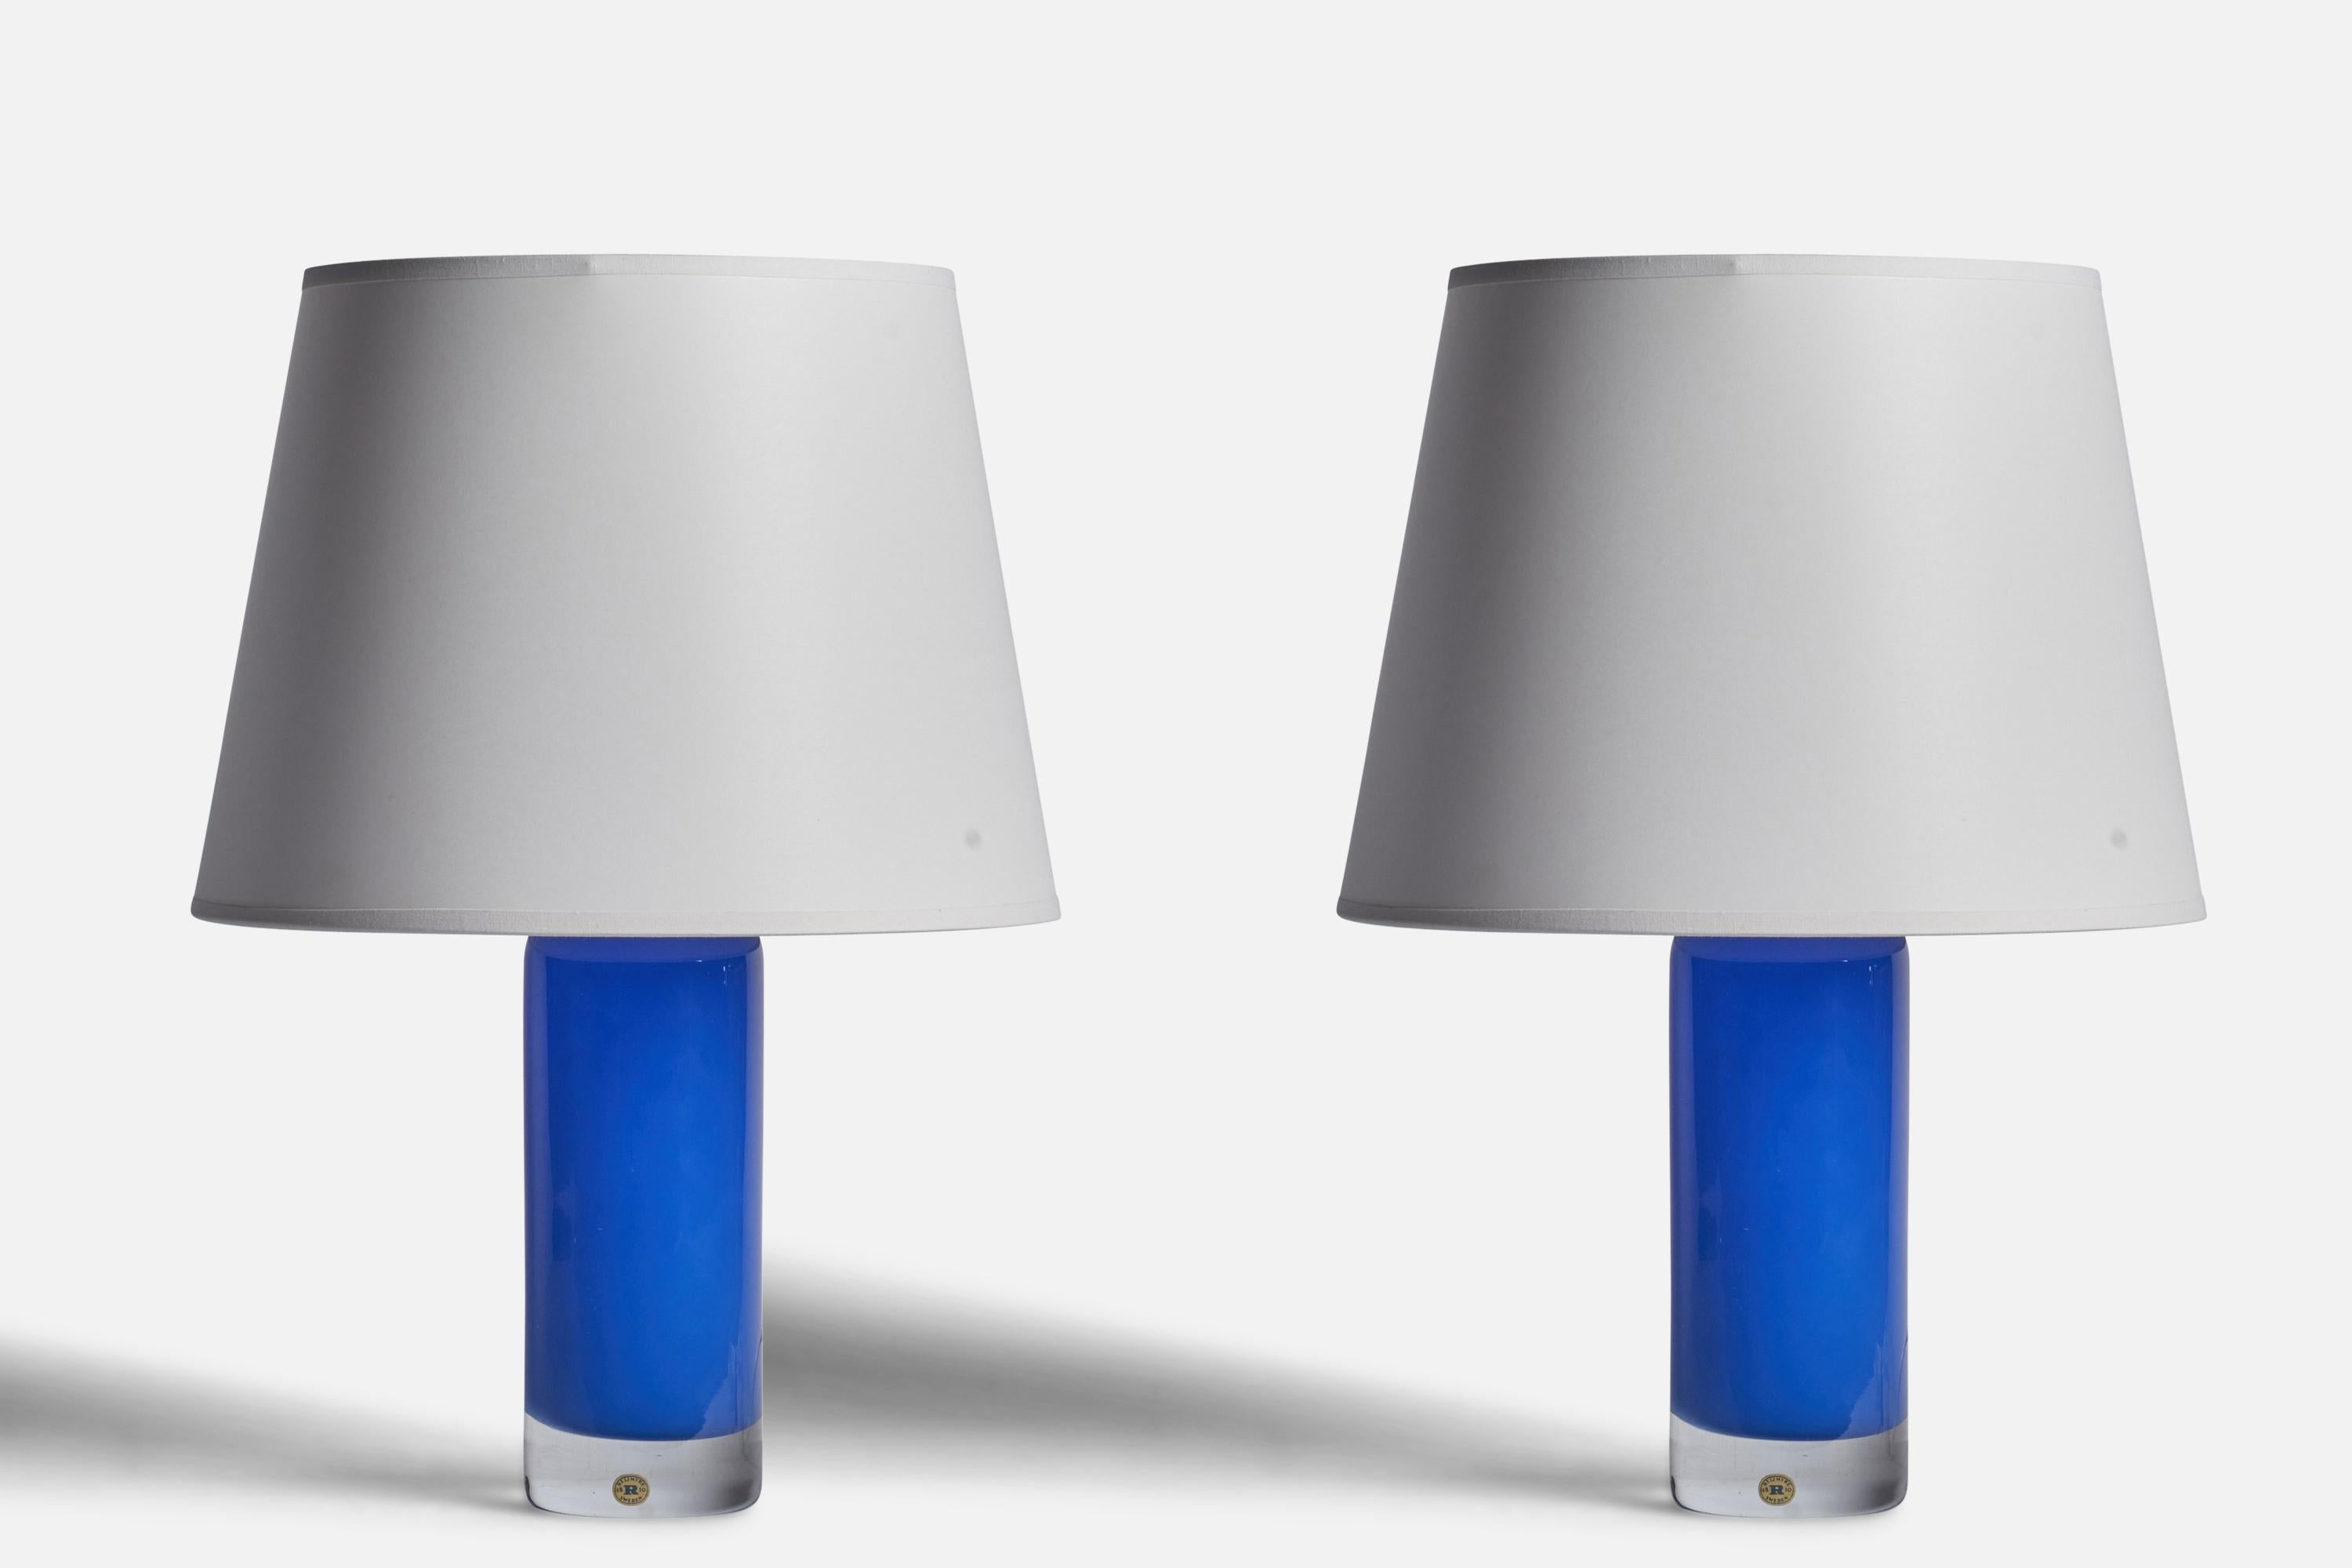 Ein Paar Tischlampen aus blauem Glas, hergestellt von Reijmyre Glasbruk, Schweden, 1950er Jahre.

Abmessungen der Lampe (Zoll): 12